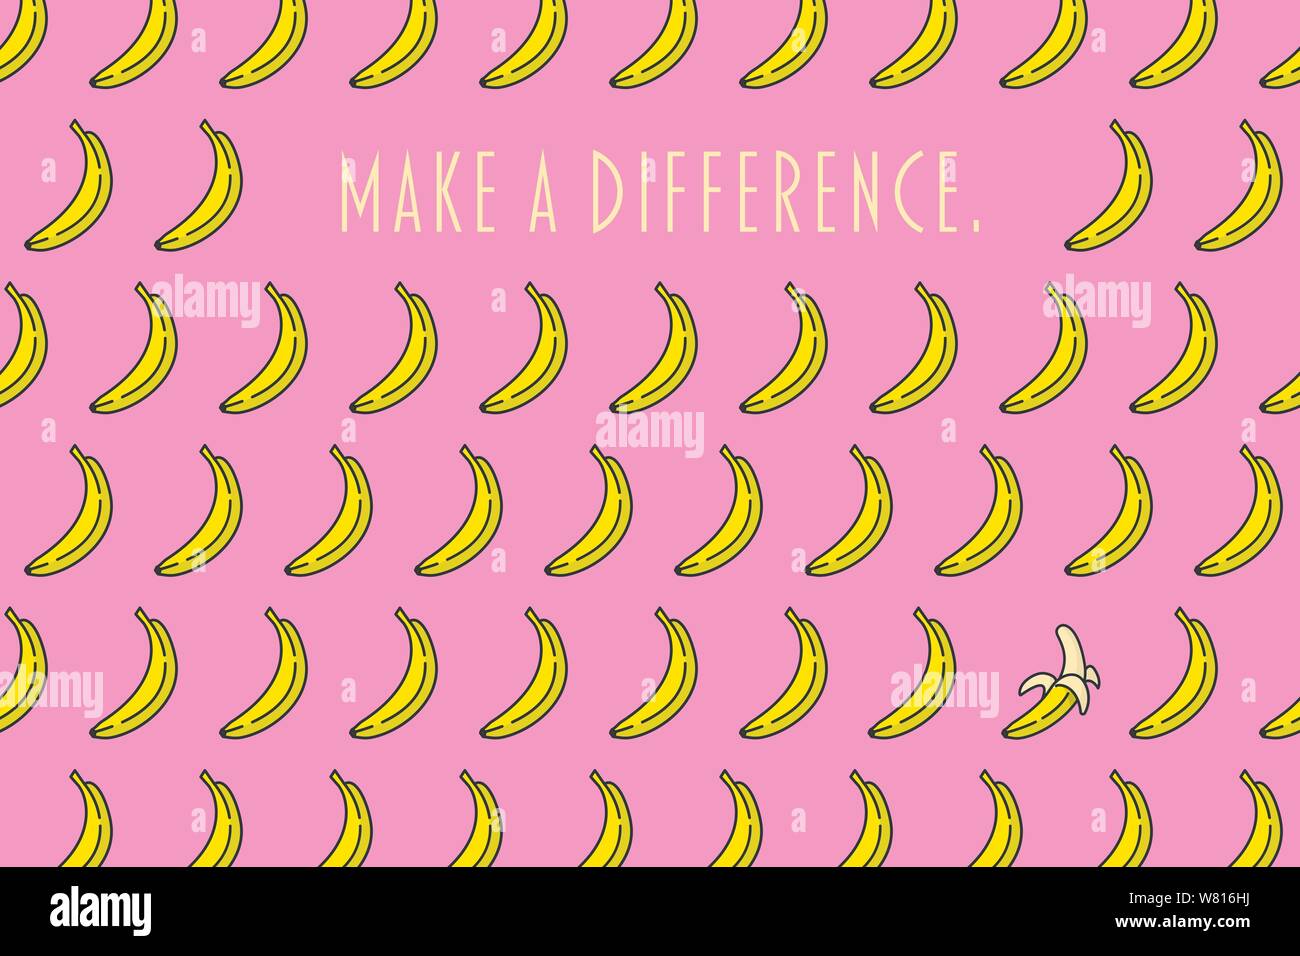 Ein Unterschied motivational Poster mit Bananen Muster auf rosa Hintergrund Vector Illustration machen Stock Vektor